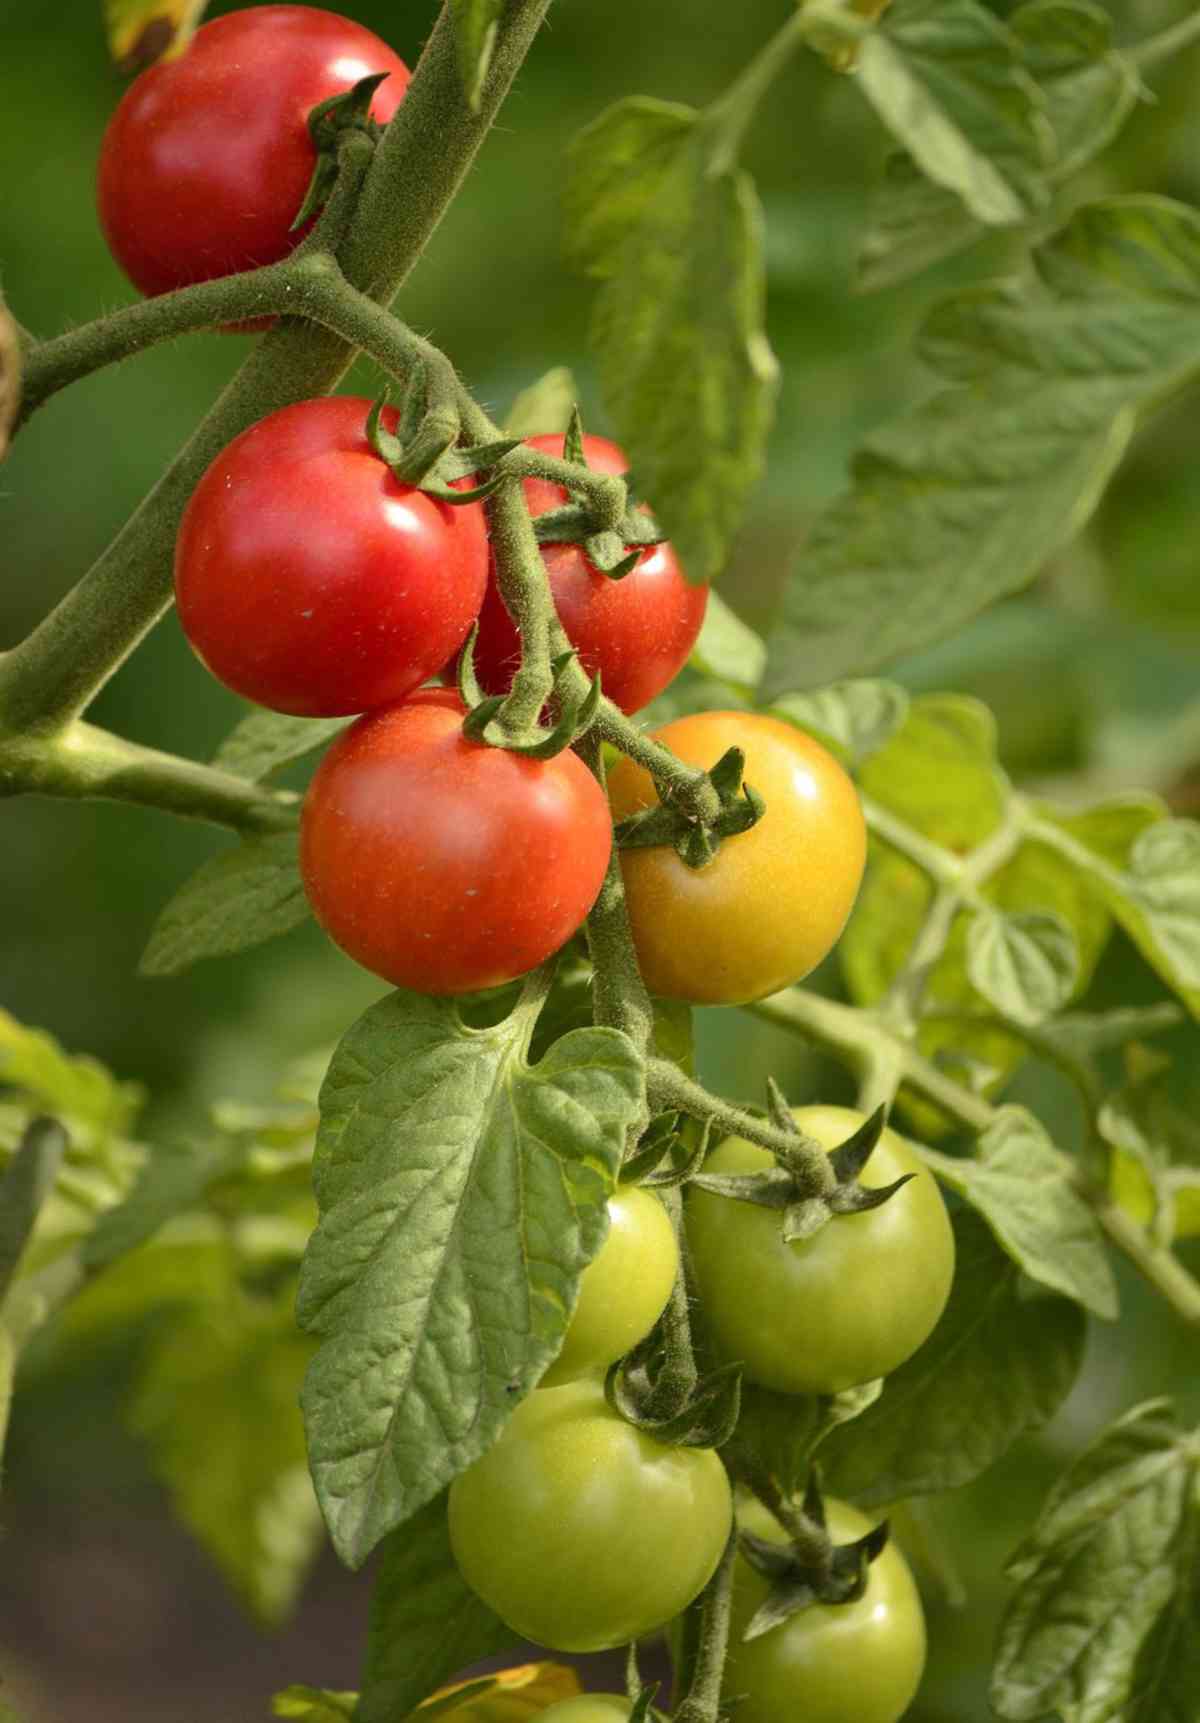 Tomato timing, the perfect moment to pick ripe tomato